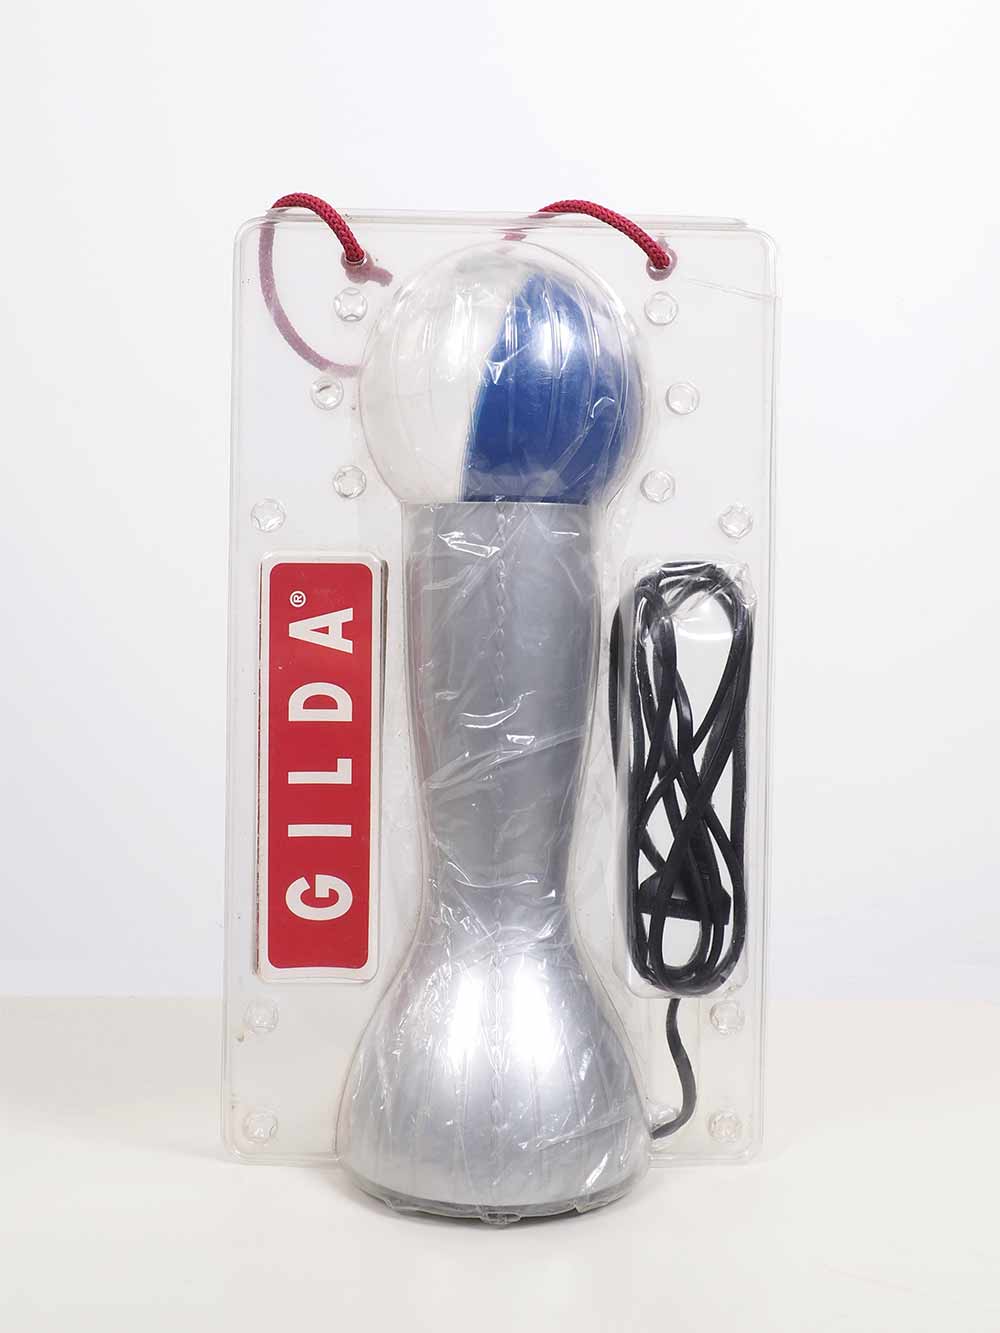 Tafellamp Artemide Gilda Capponi Suk Il zilver blauw